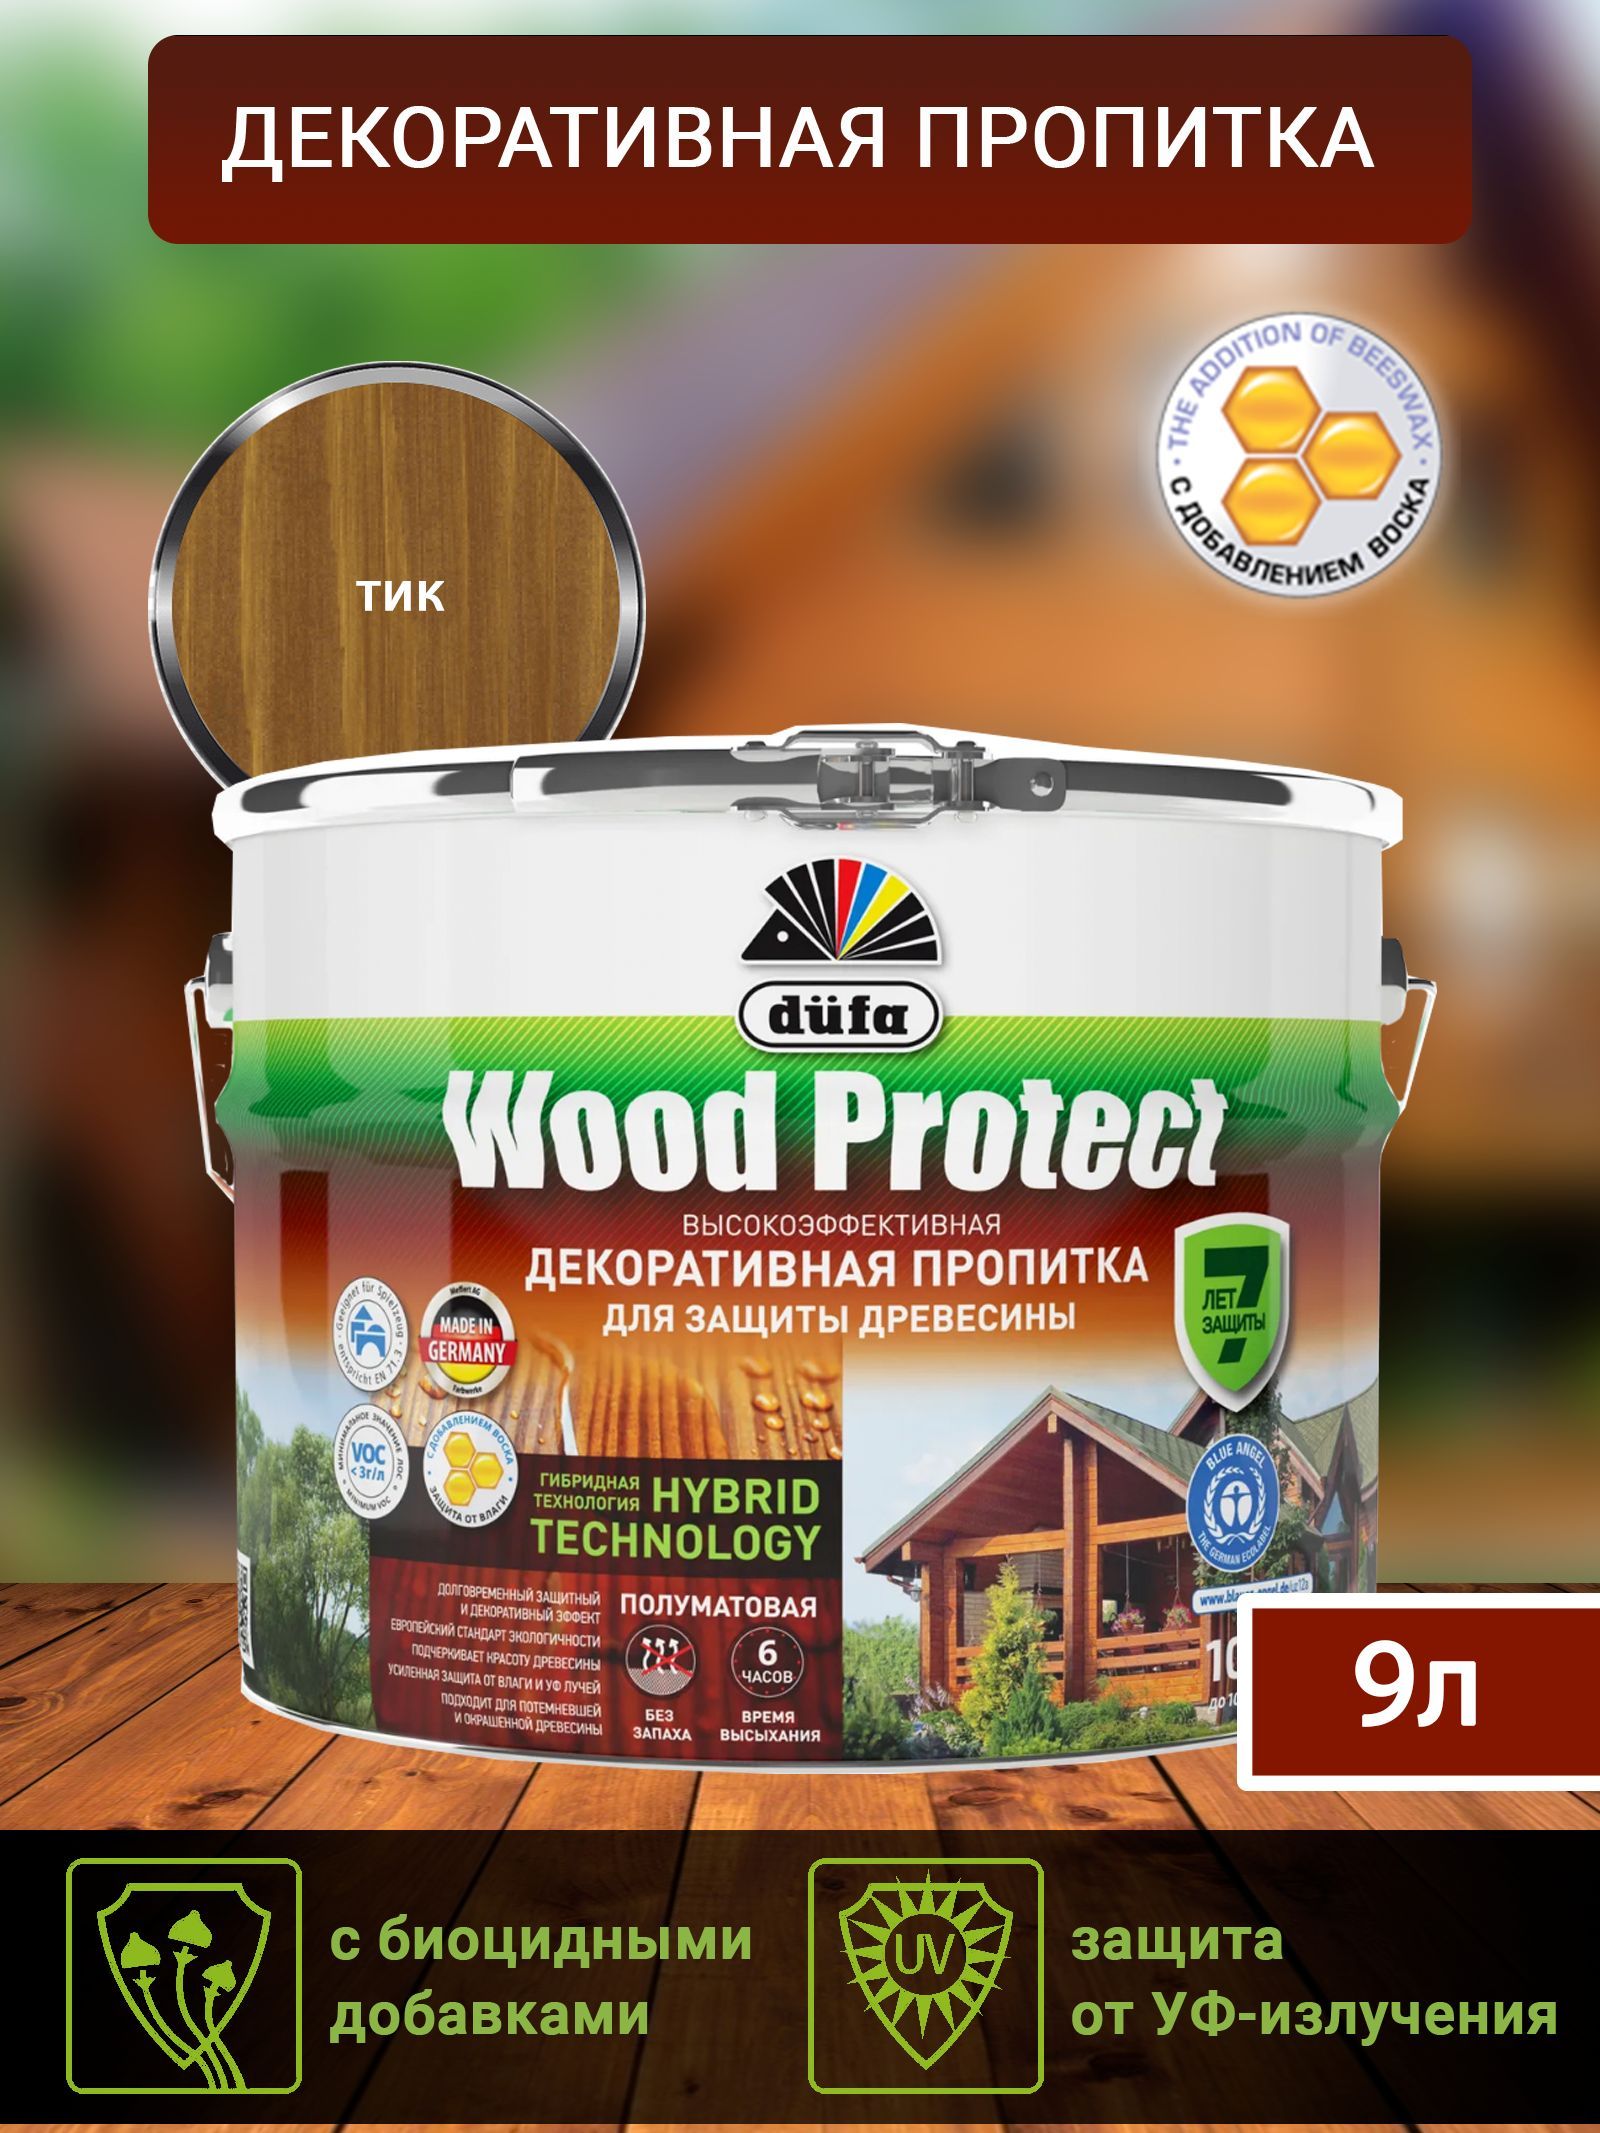 Dufa Пропитка “Wood Protect” для защиты древесины; тик 9 л, шт